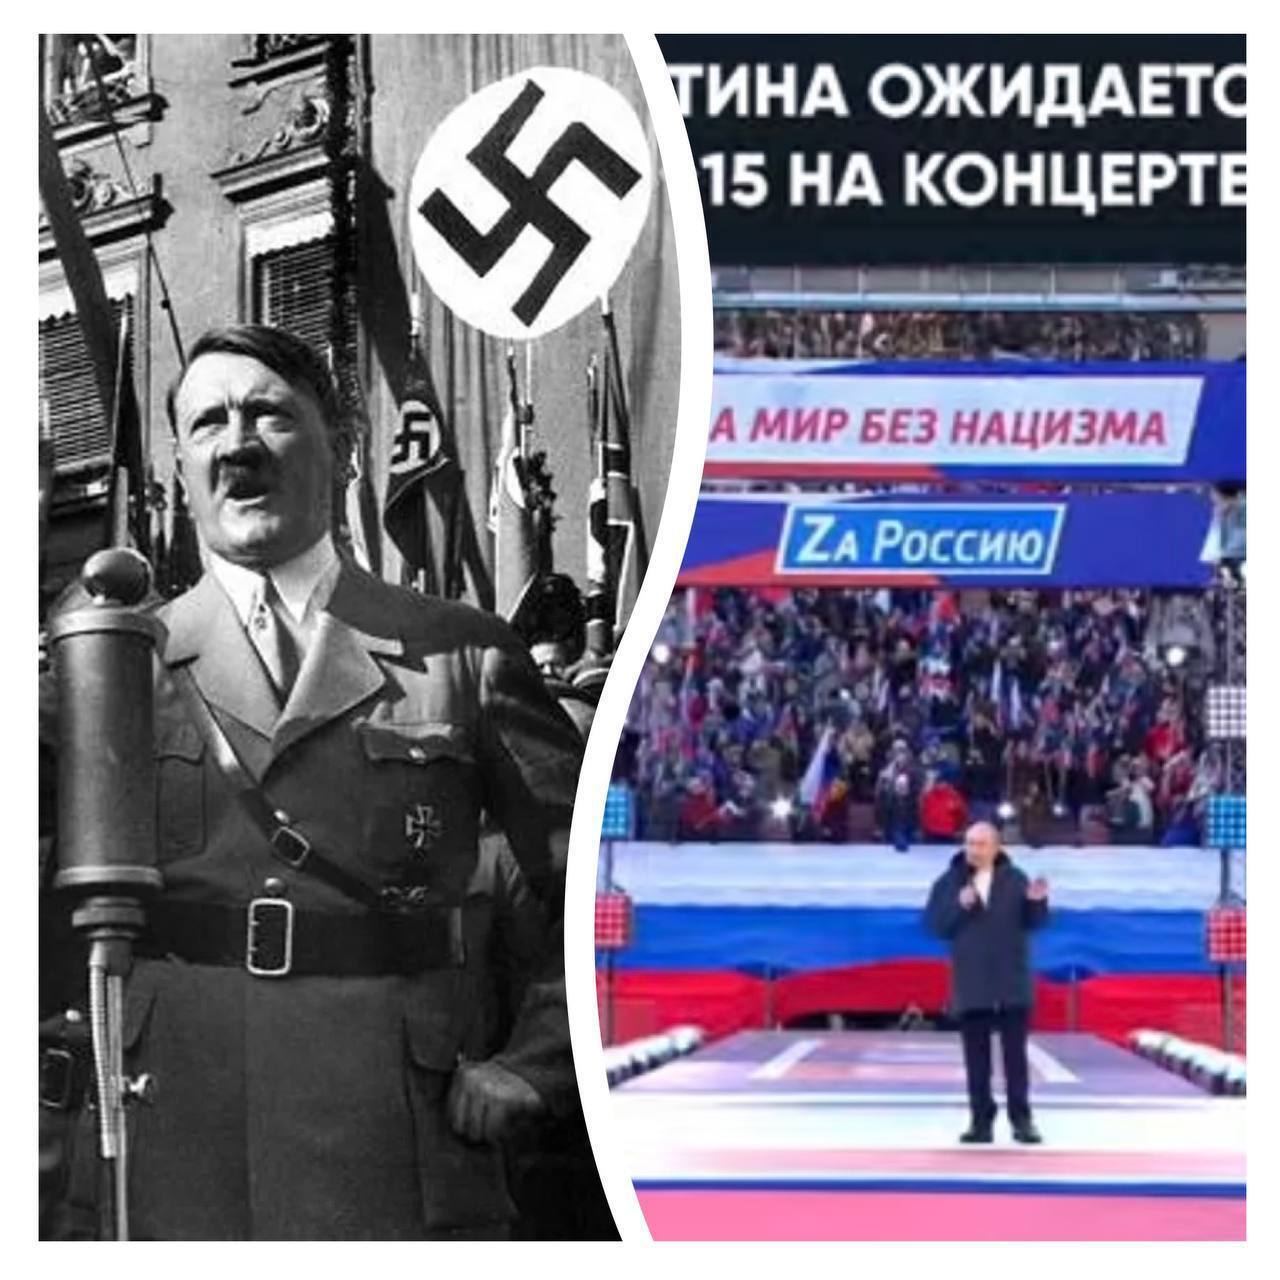 Российские лозунги сравнили с фашистской свастикой и политикой Третьего рейха